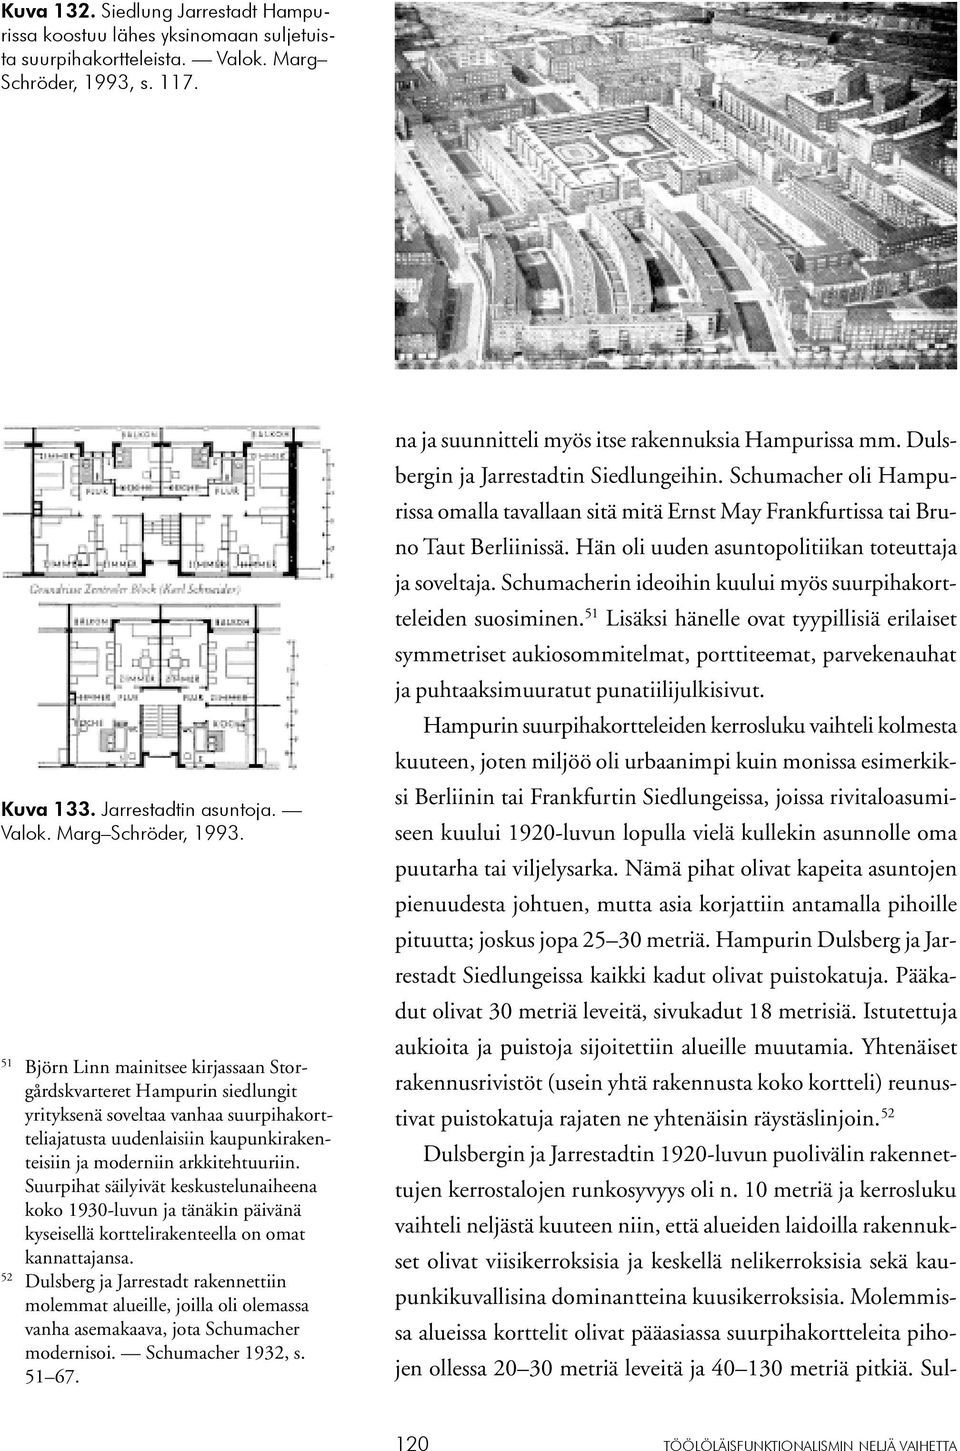 51 Björn Linn mainitsee kirjassaan Storgårdskvarteret Hampurin siedlungit yrityksenä soveltaa vanhaa suurpihakortteliajatusta uudenlaisiin kaupunkirakenteisiin ja moderniin arkkitehtuuriin.